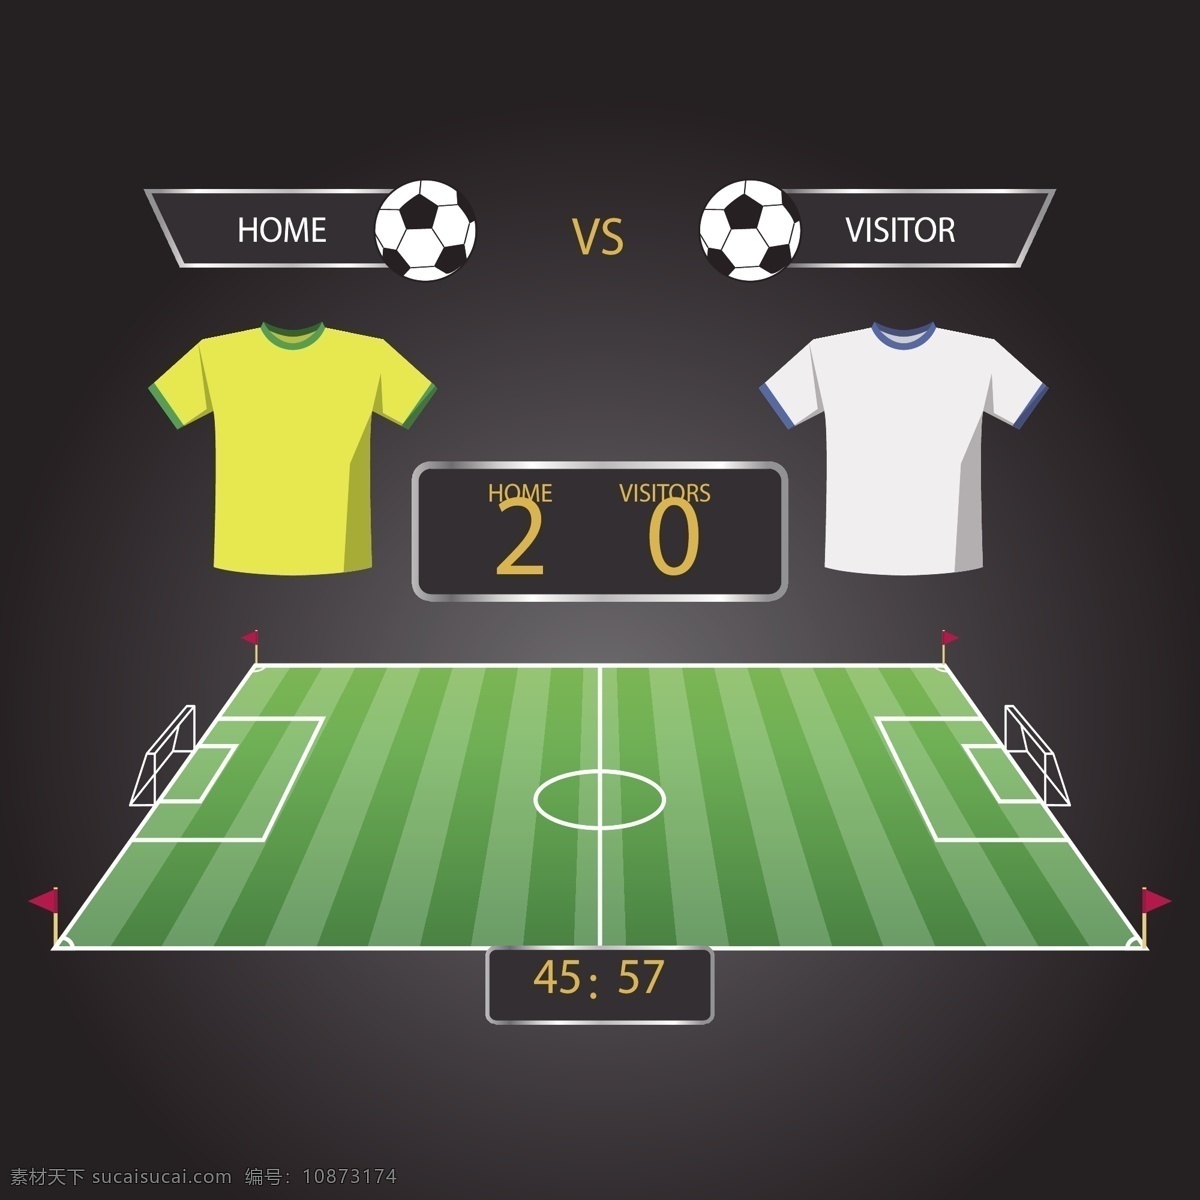 足球场 背景 记分牌 世界杯 矢量素材 足球 黄色 绿色 俄罗斯 欧洲杯 卡通 比赛 体育 竞赛 白色 2比0